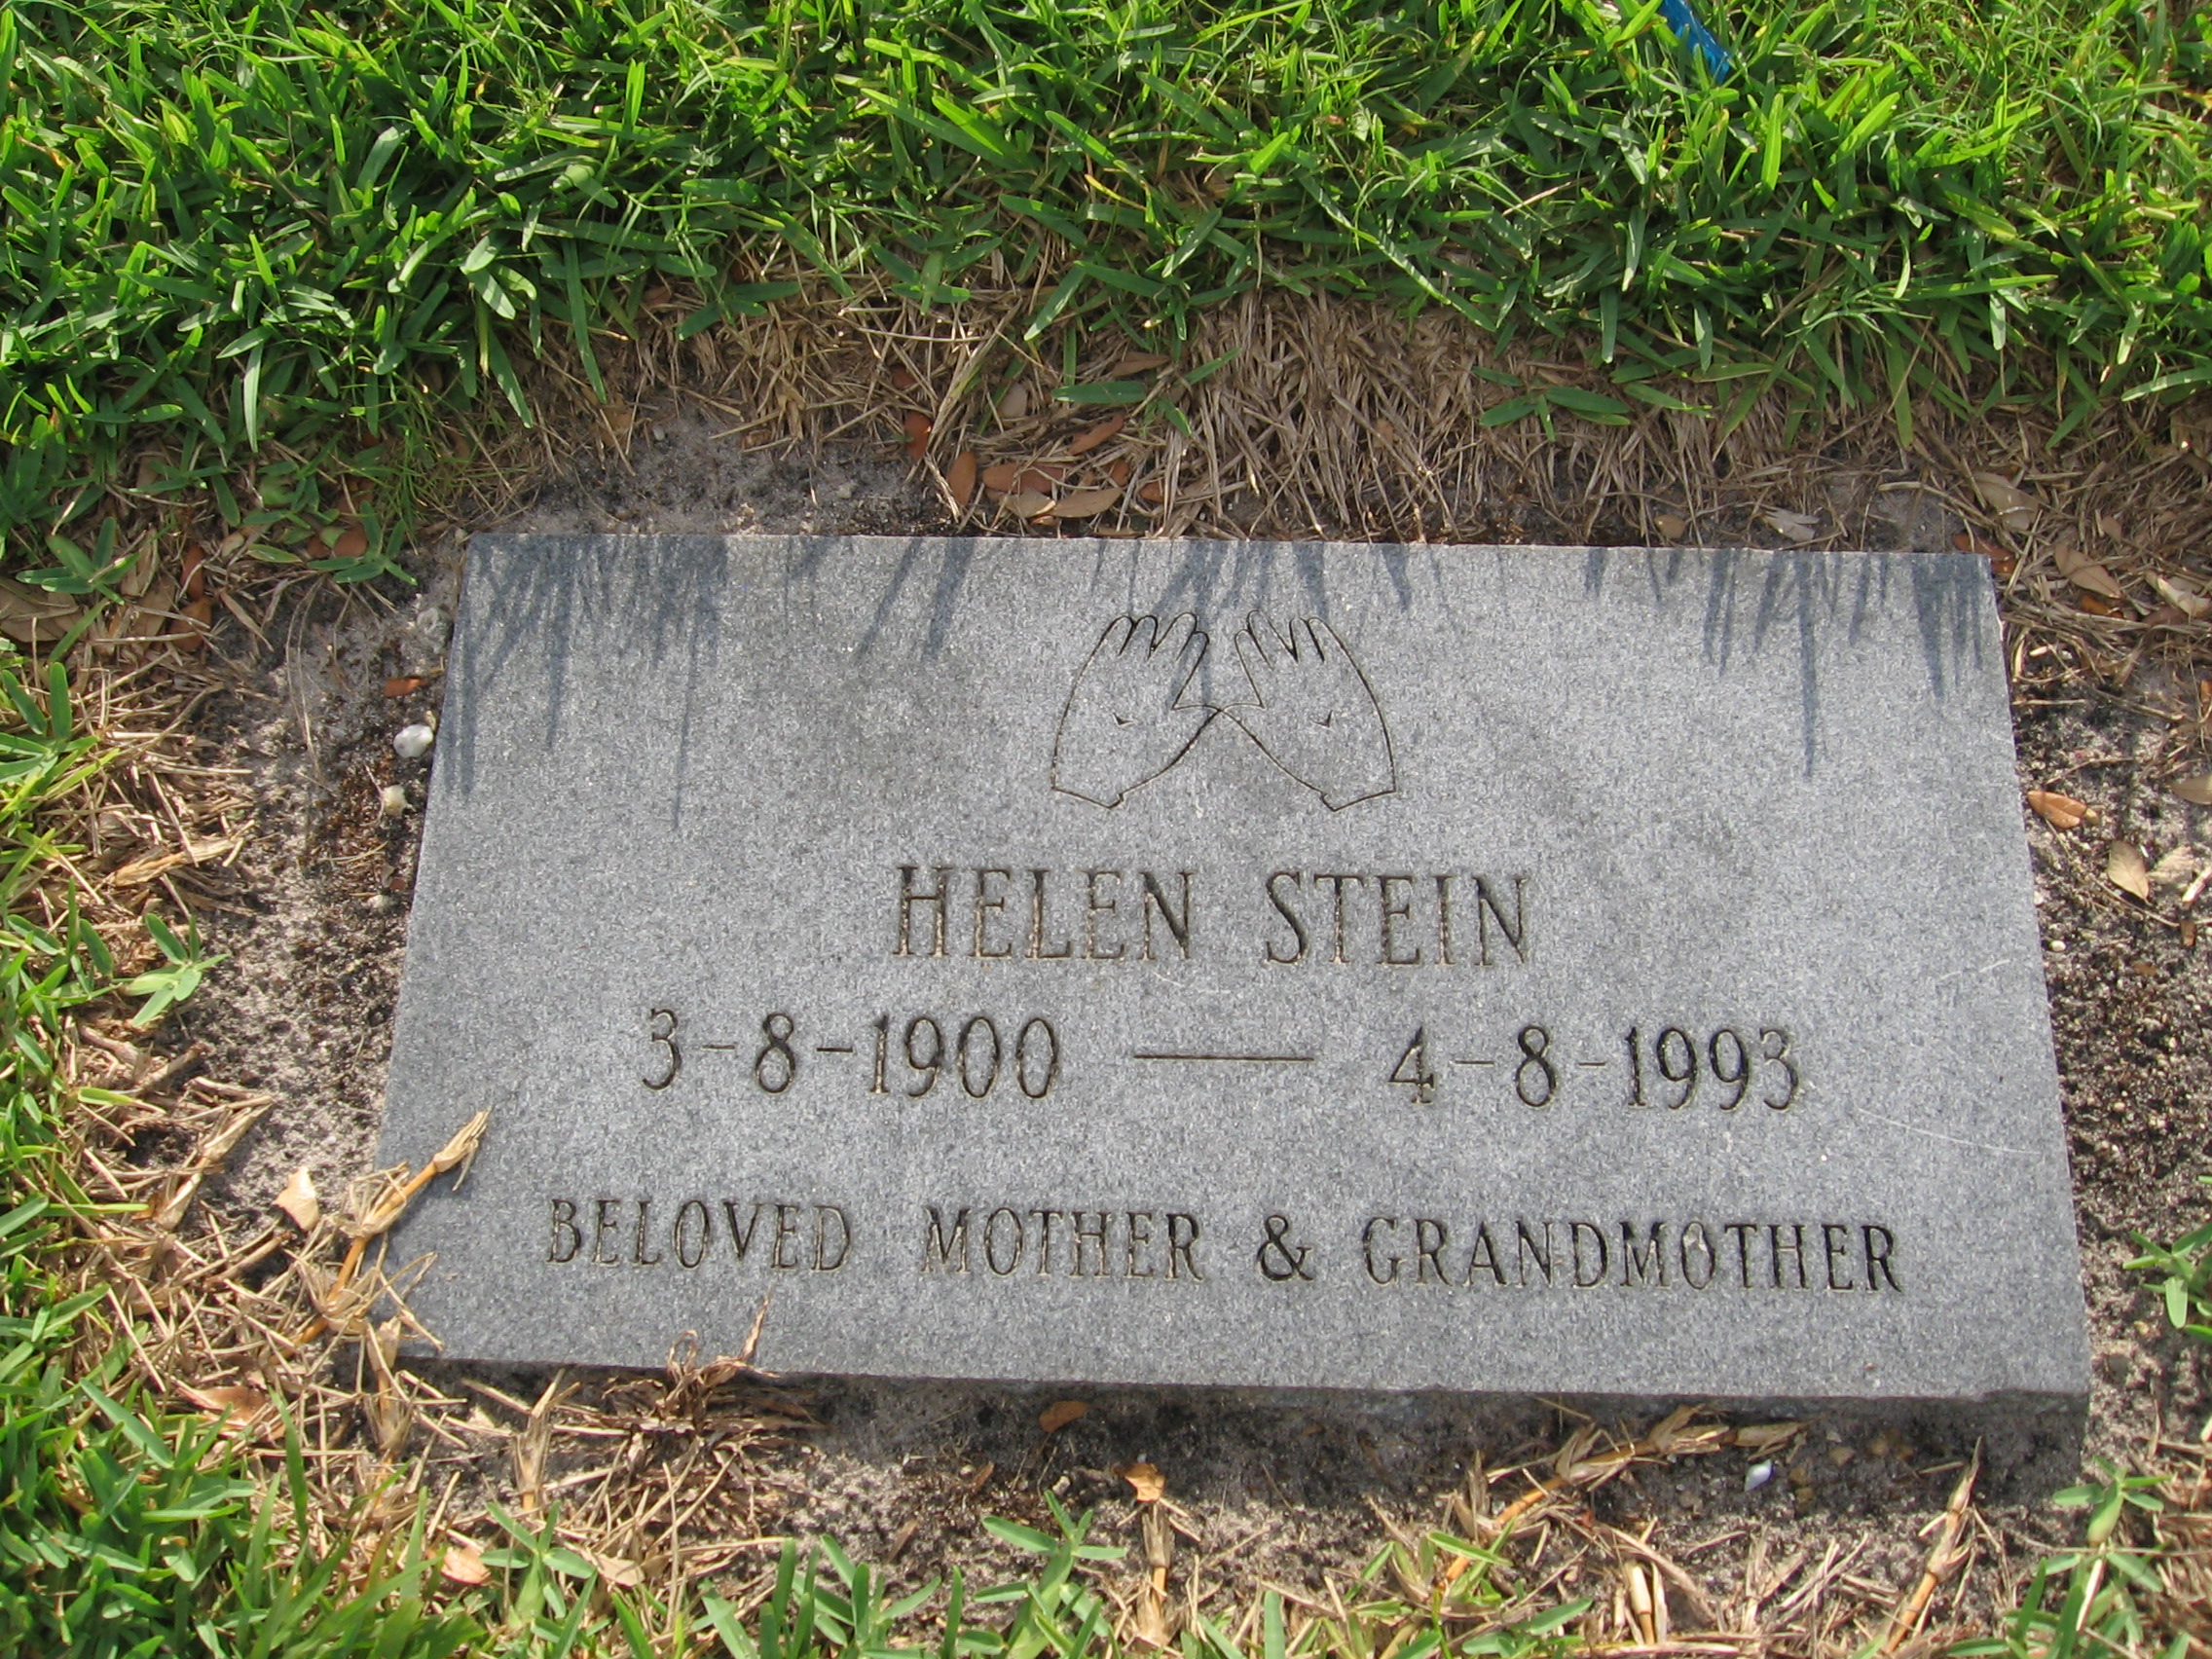 Helen Stein